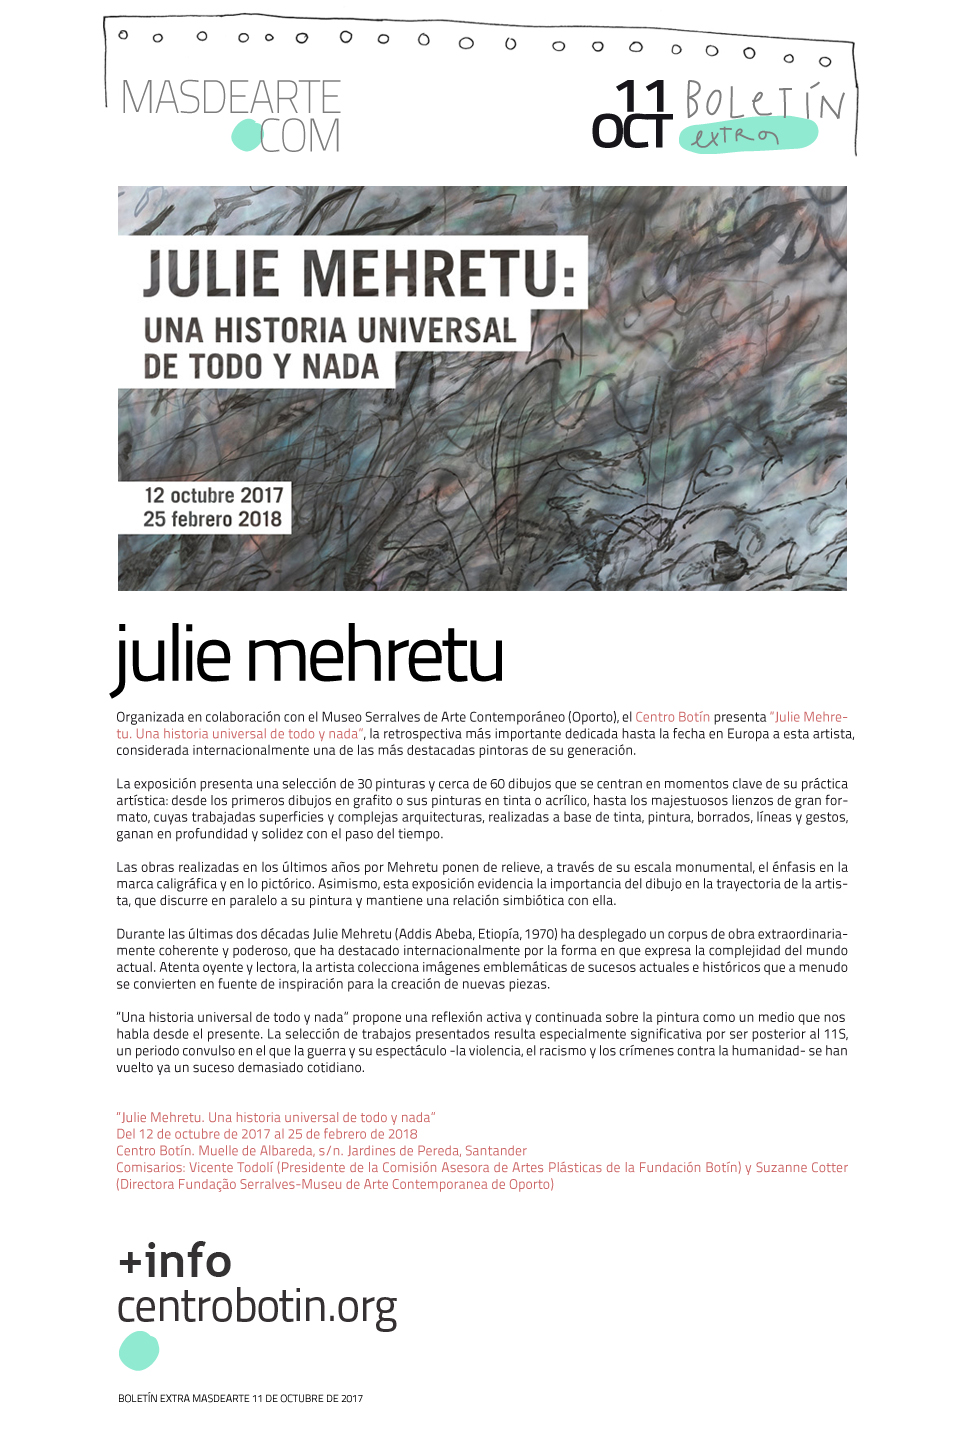 Exposición de Julie Mehretu en el Centro Botín de Santander. Del 12 de octubre de 2017 al 25 de febrero de 2018